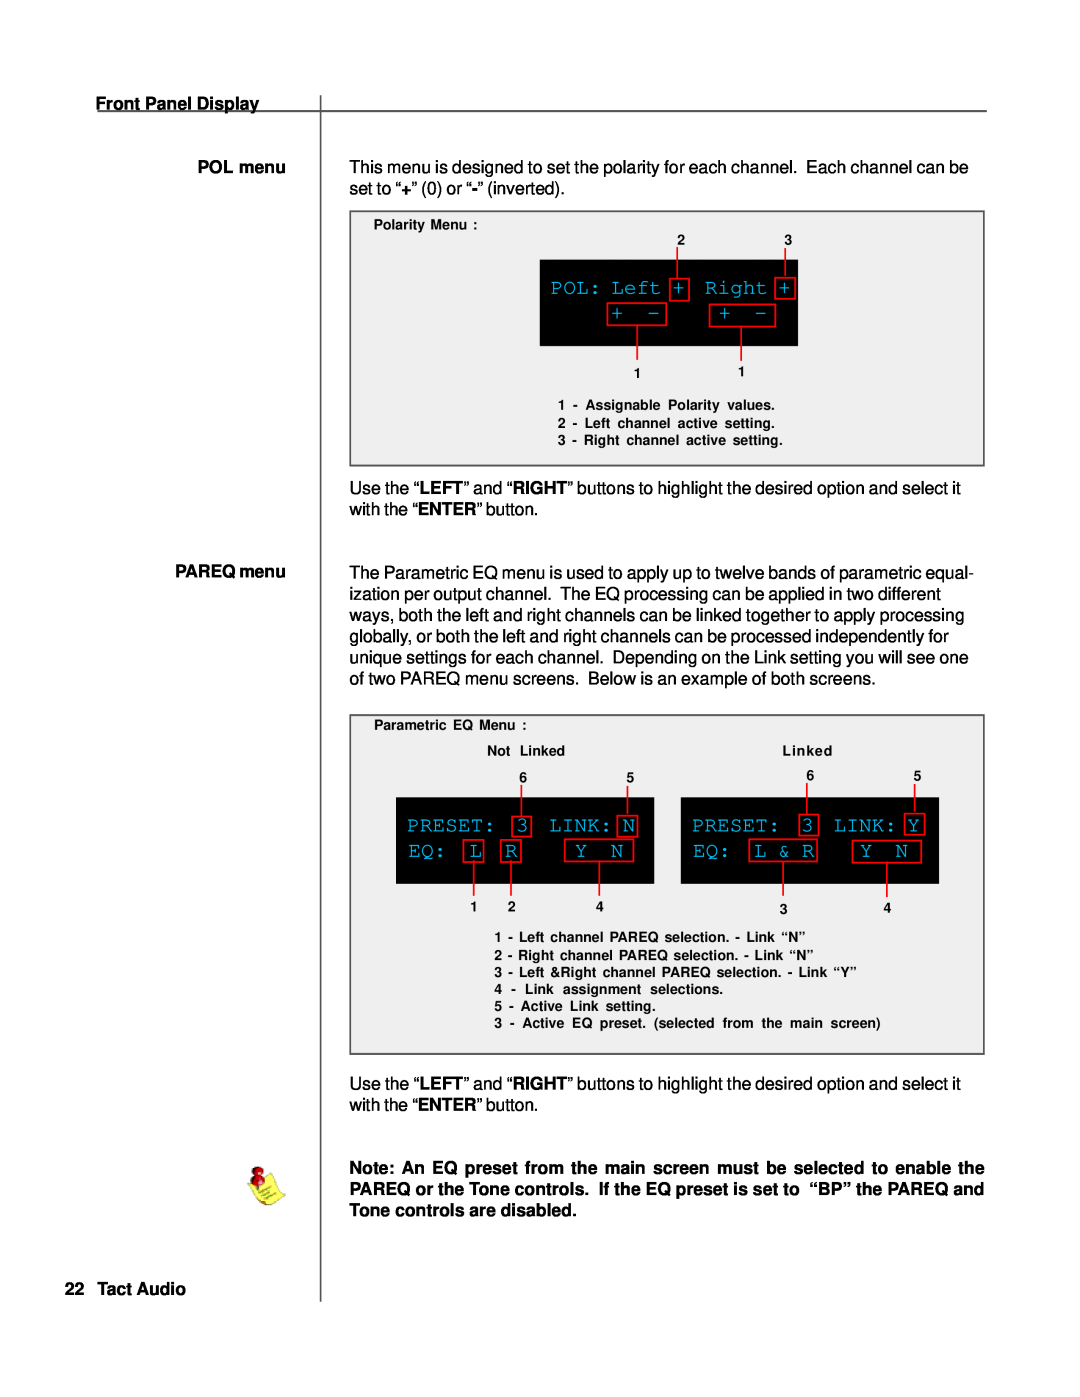 TacT Audio RCS 2.0S owner manual Right +, Preset, Link N, Link Y, Eq L 